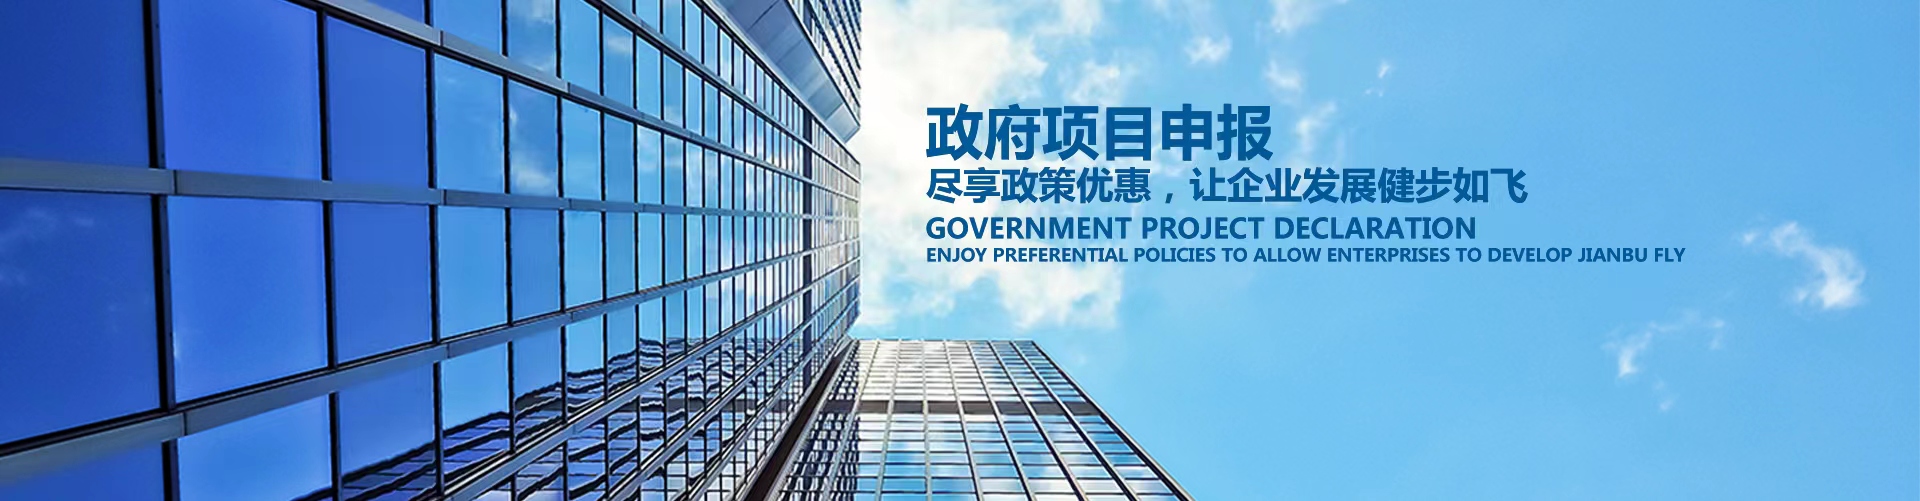 深圳市两化融合促进会可以为您提供科技型中小企业申报服务啦!